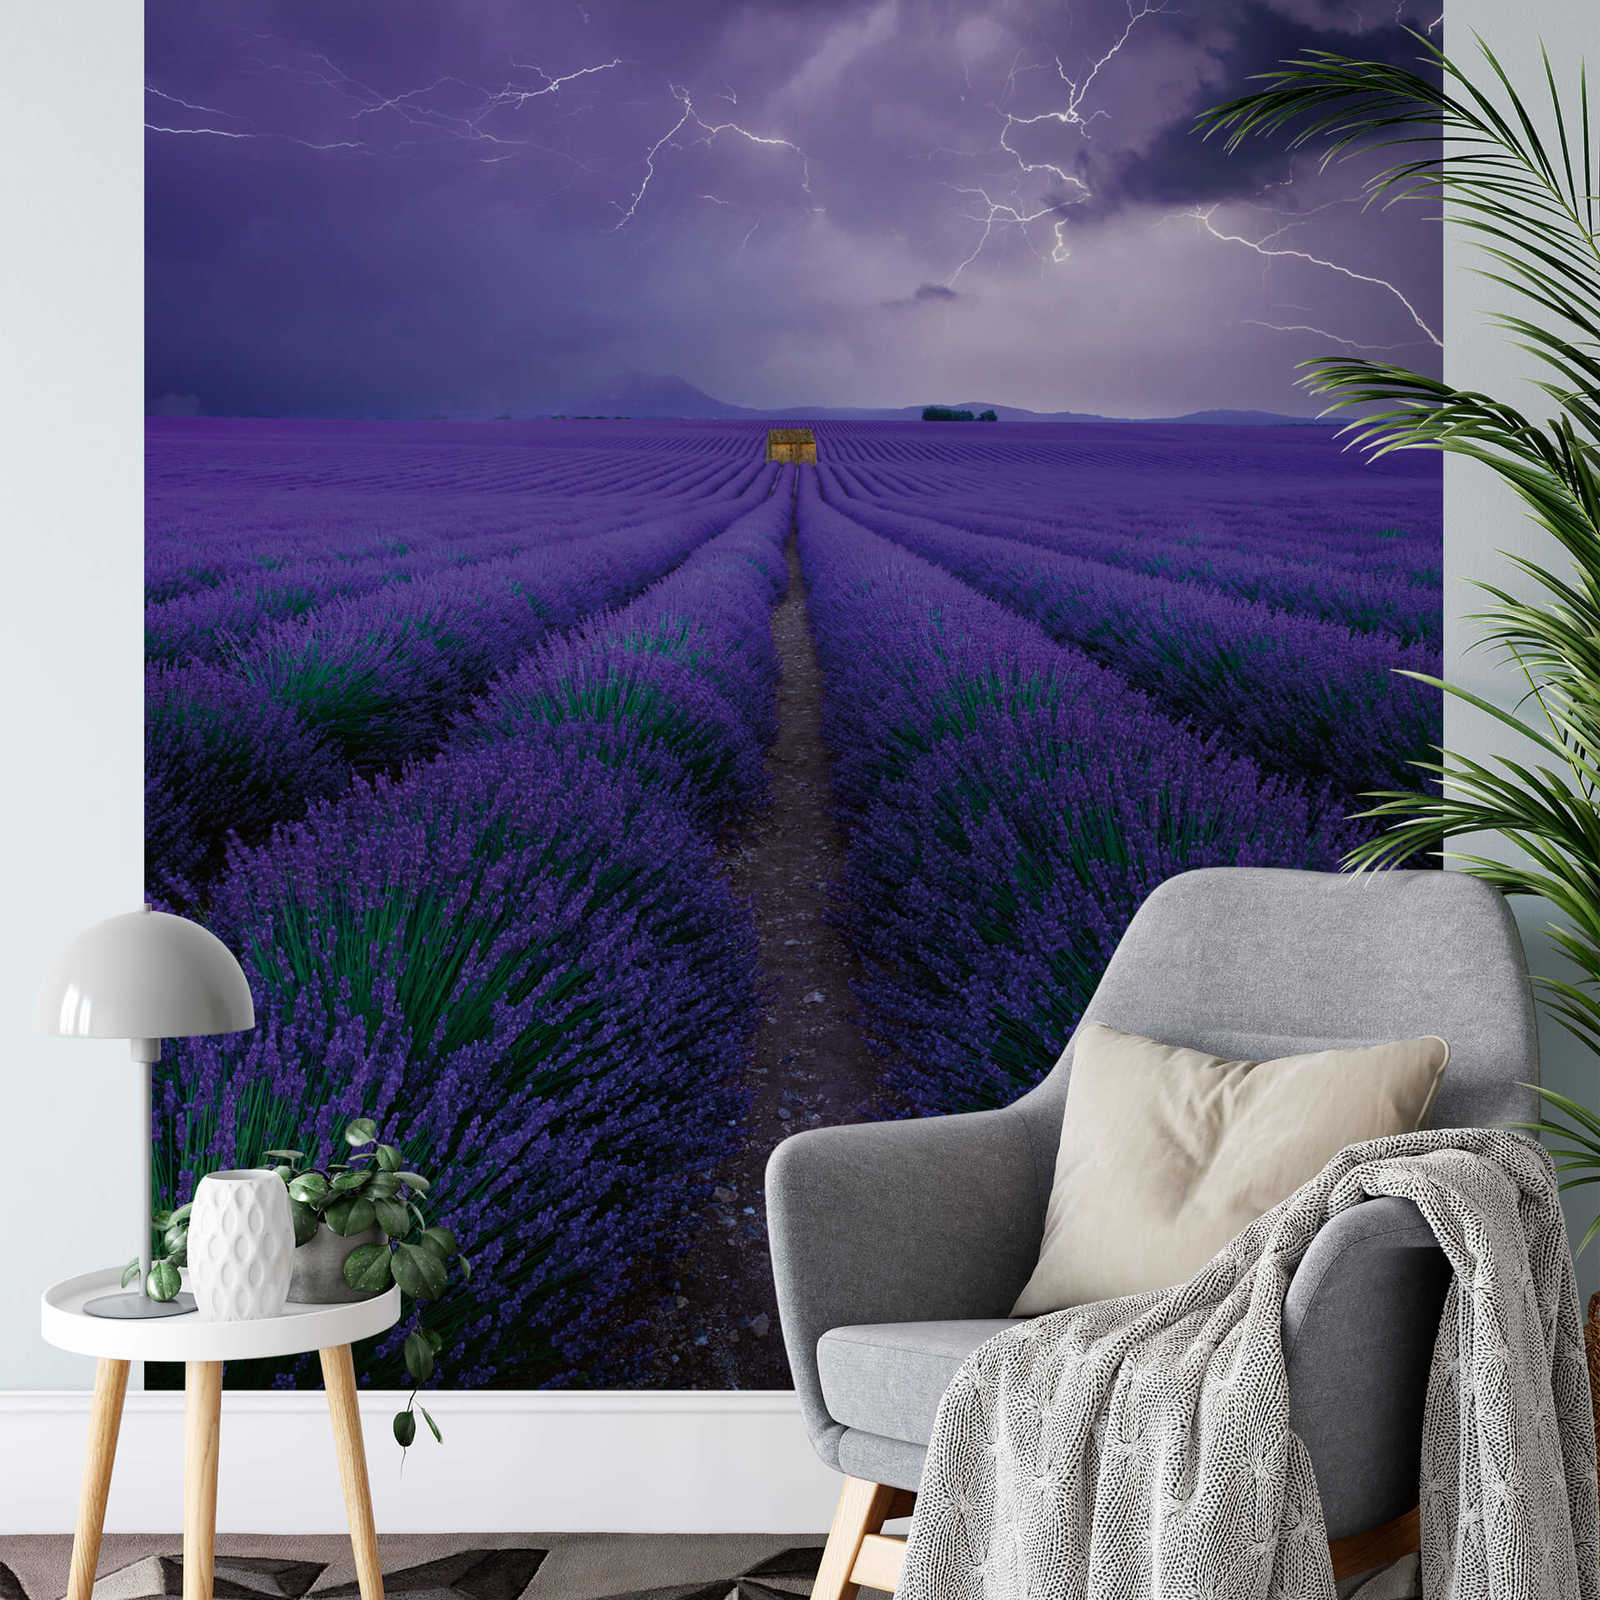             Papier peint panoramique champ de lavande - violet, vert, marron
        